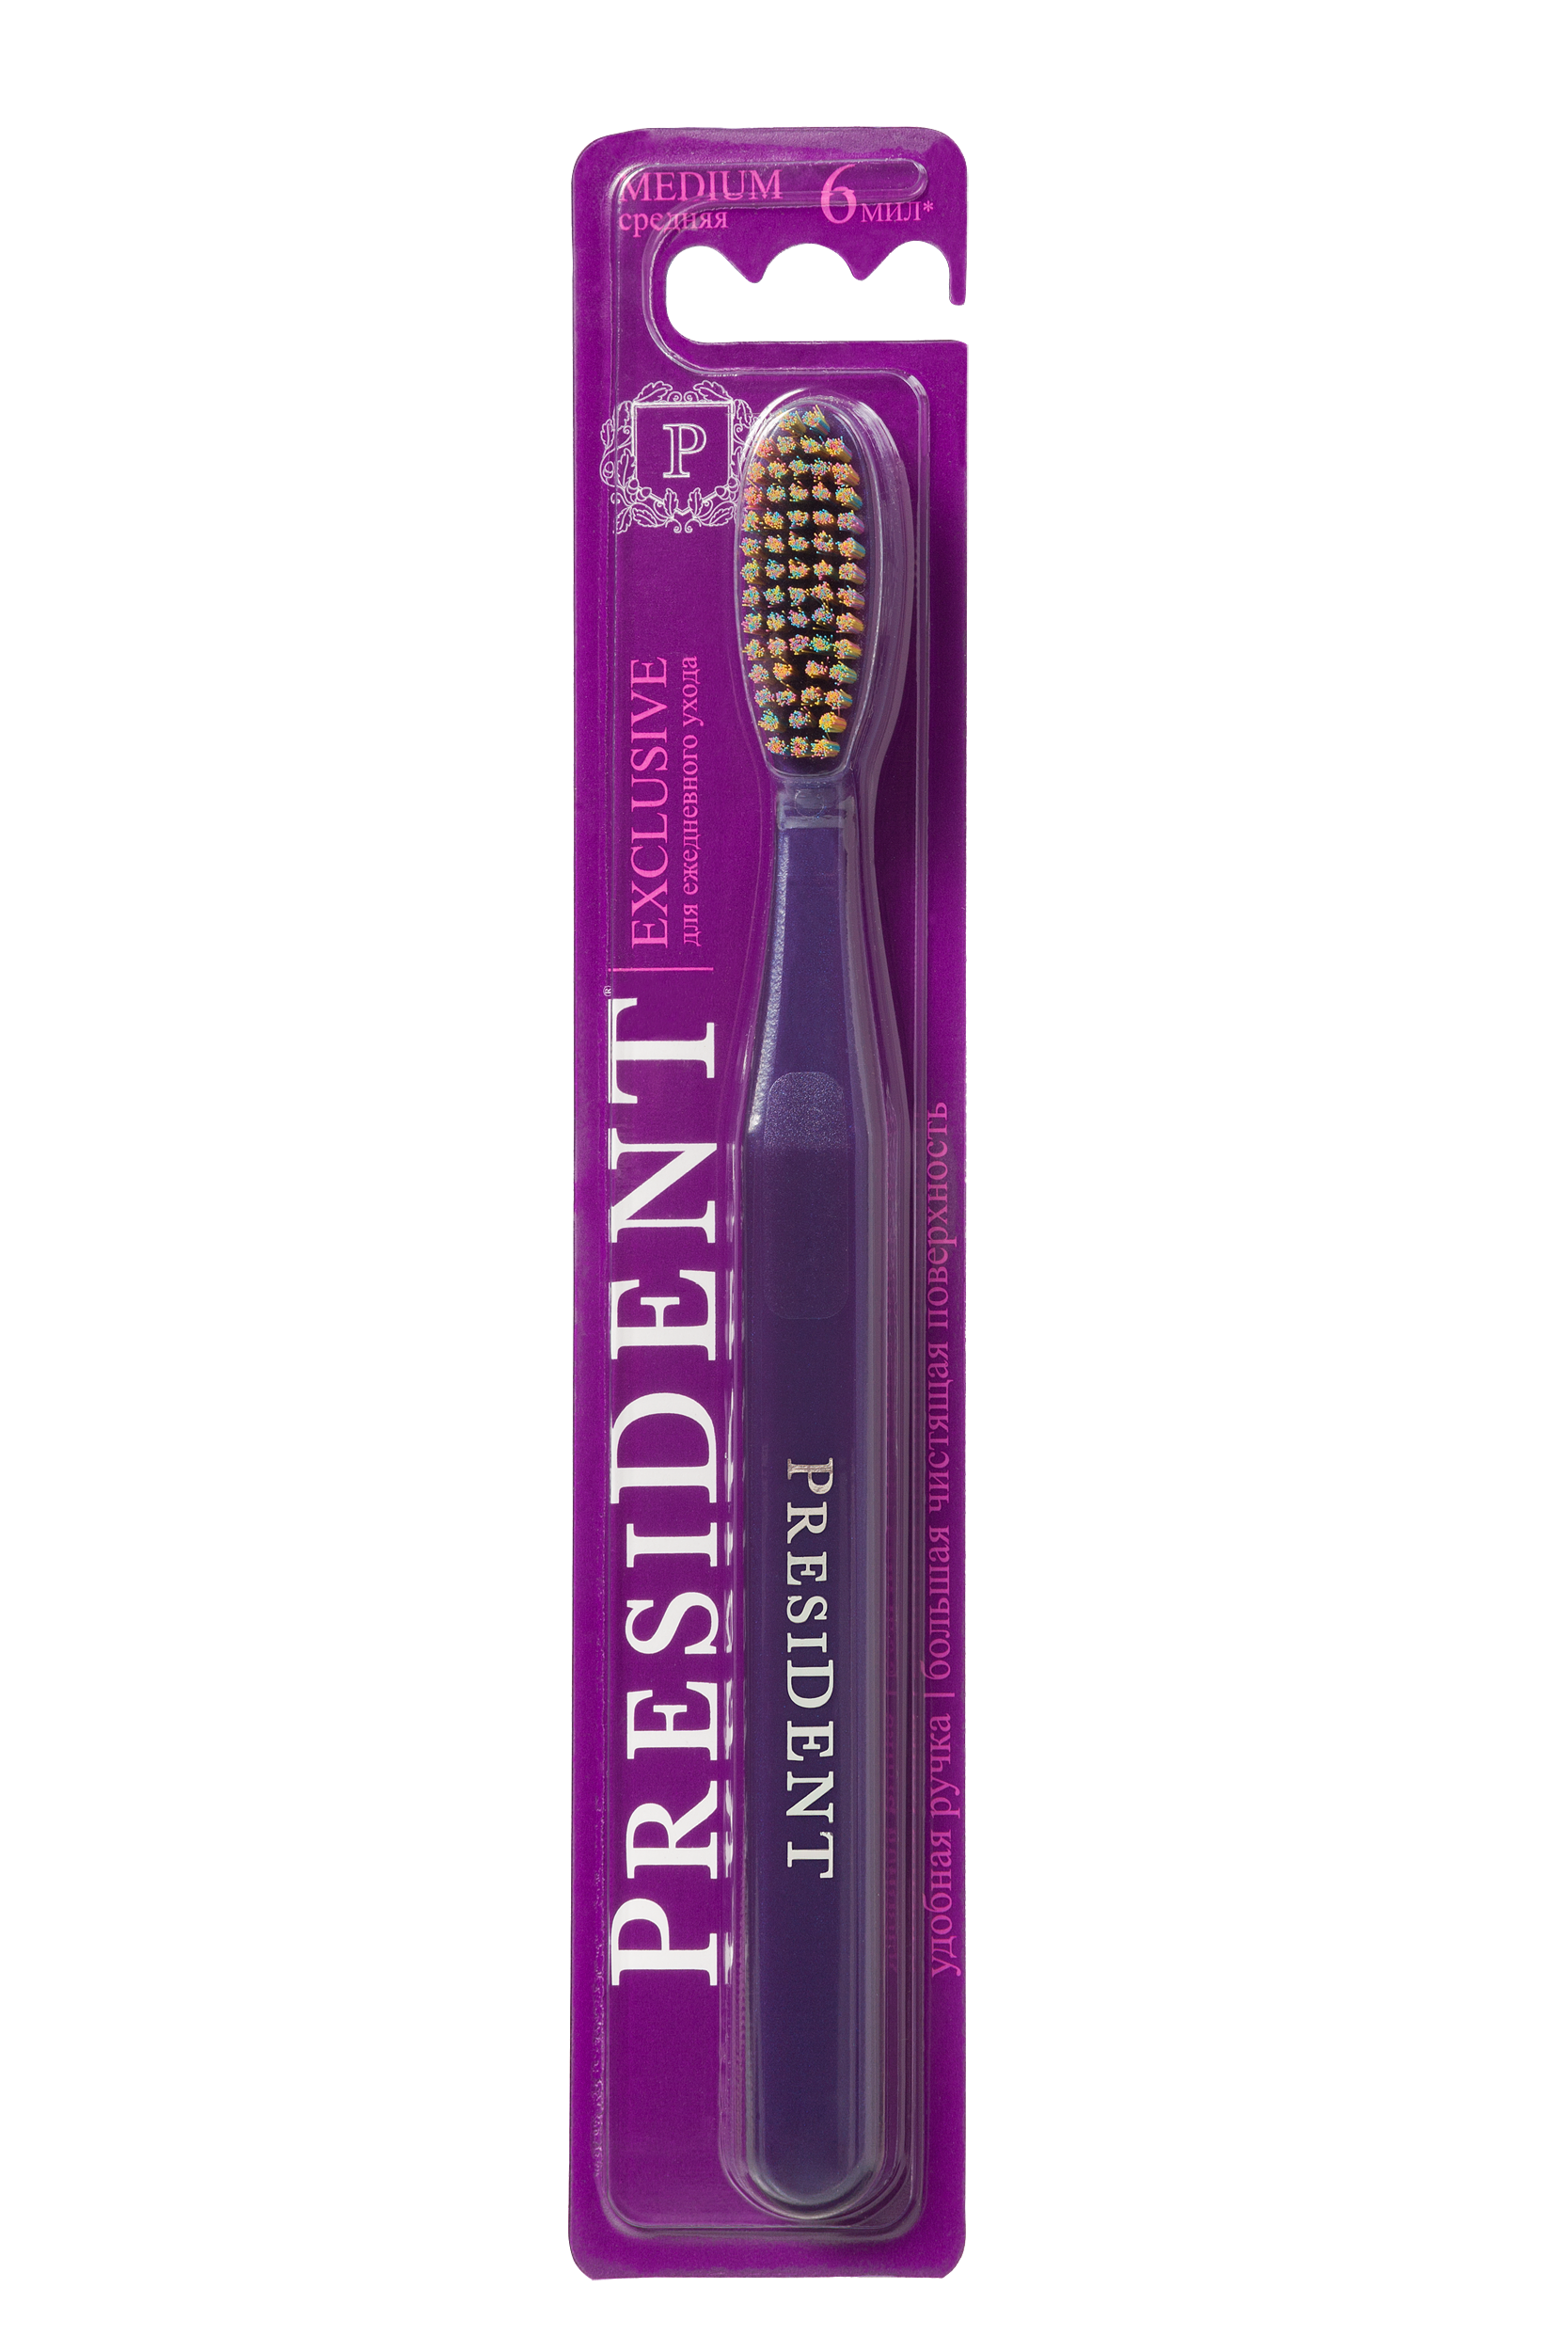 Купить Зубная щетка President Exclusive, 1 шт в ассортименте